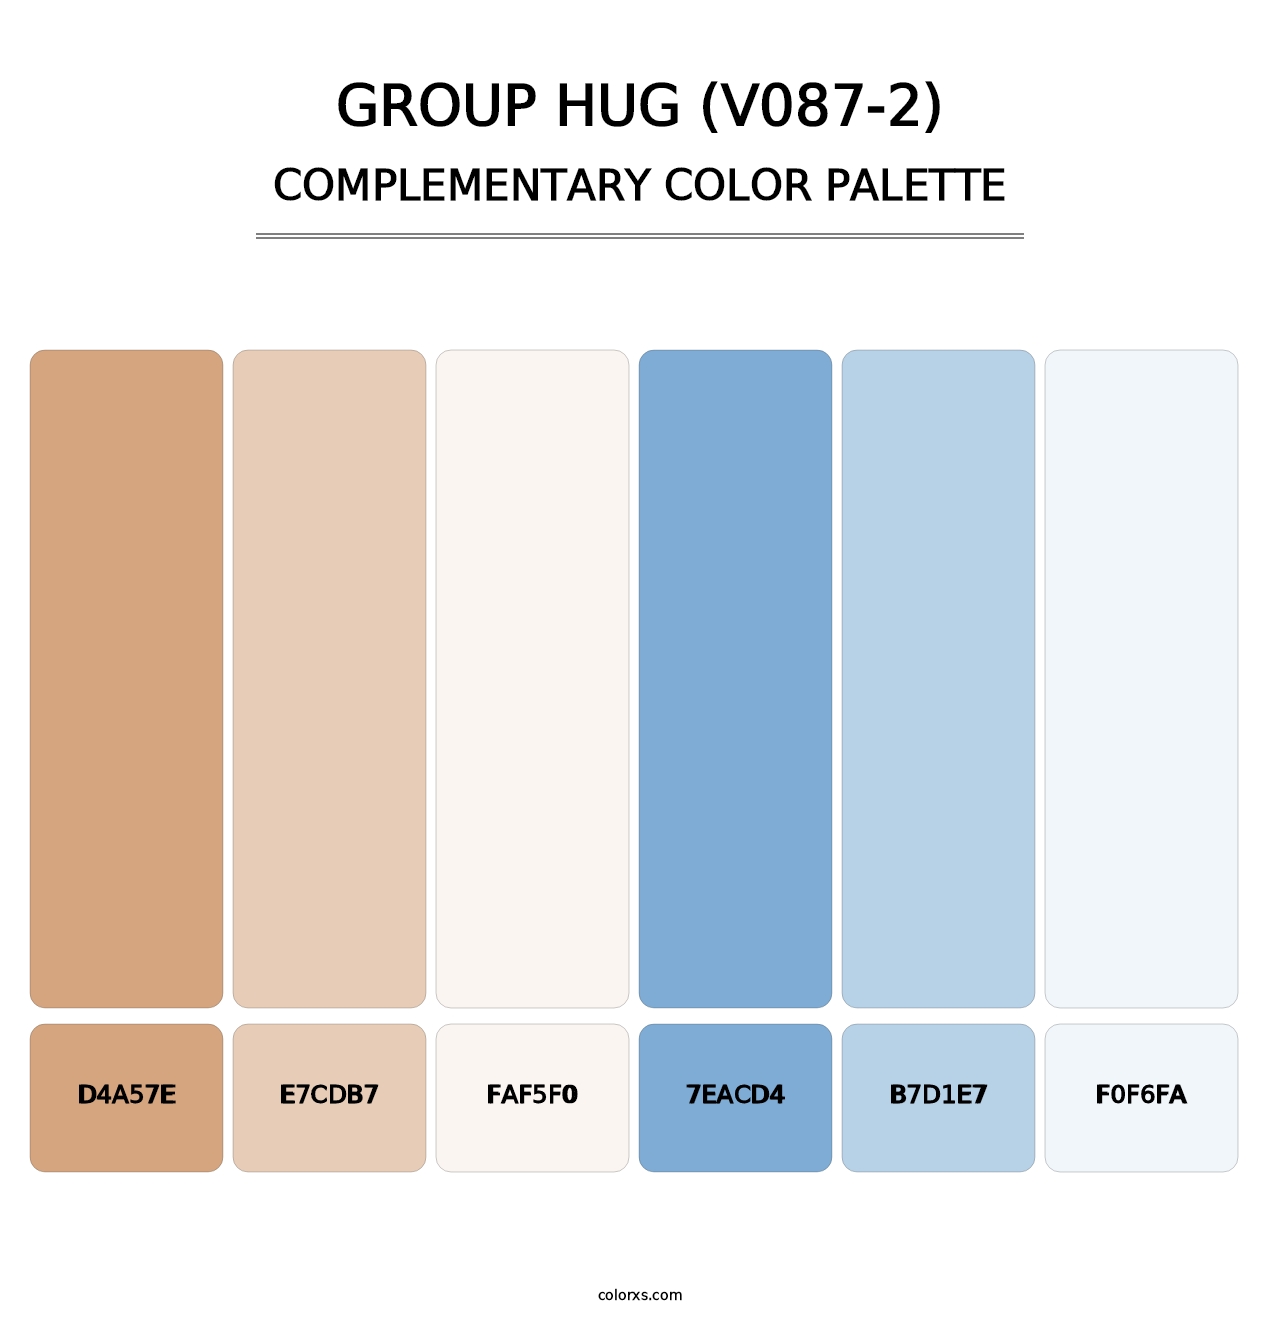 Group Hug (V087-2) - Complementary Color Palette